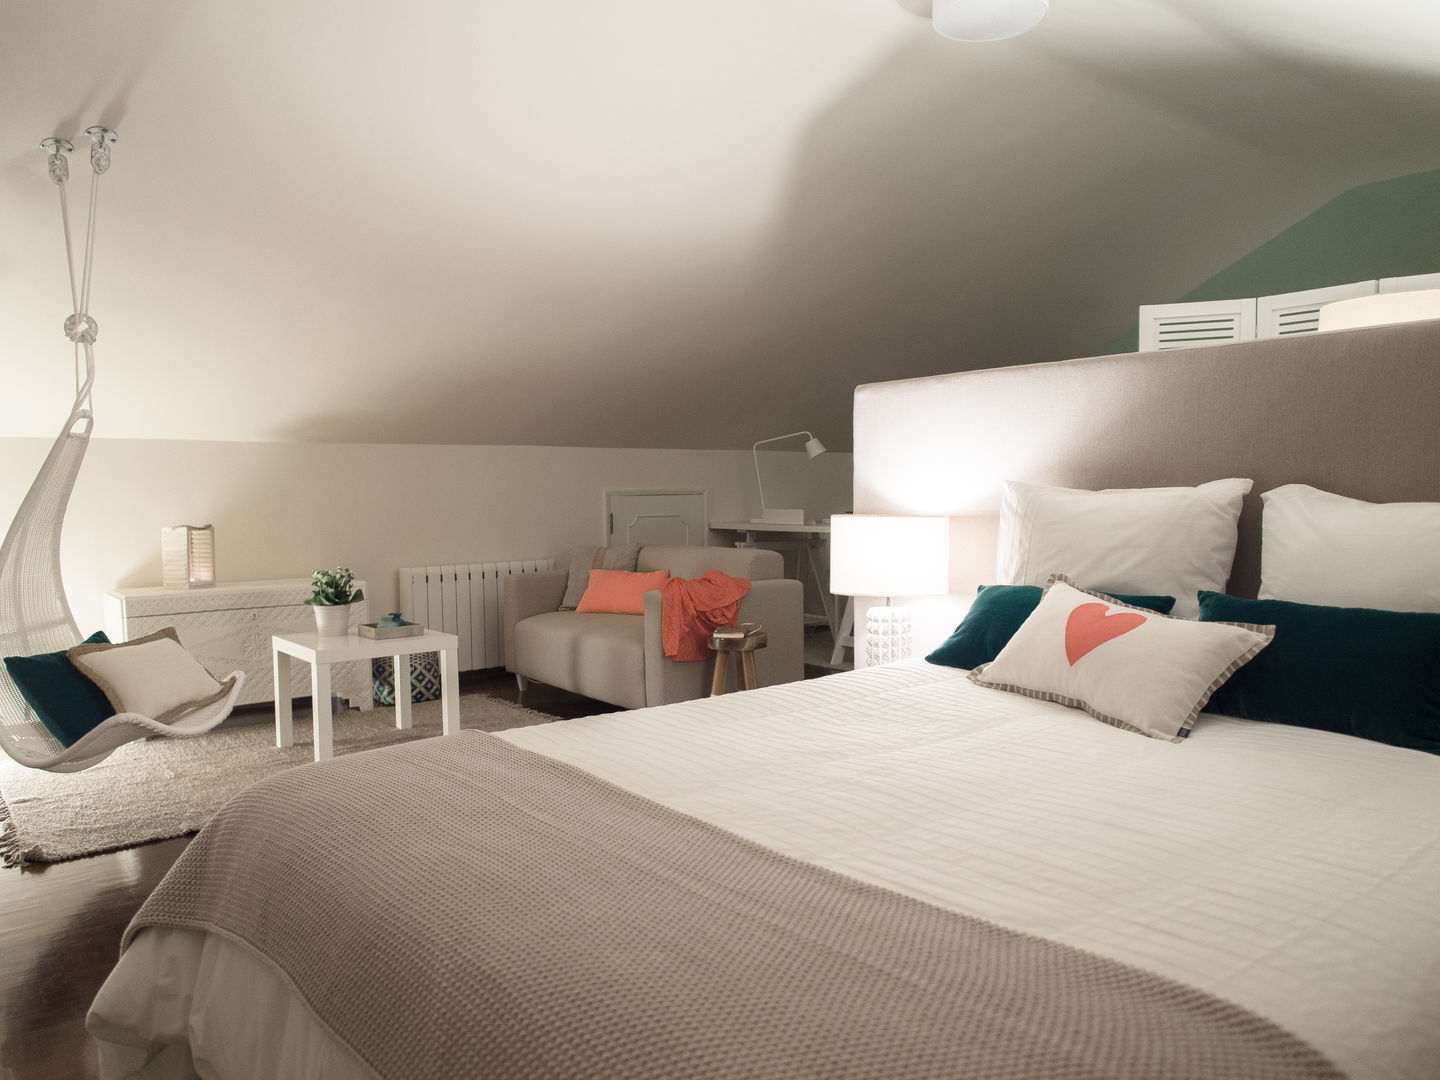 DP Bedroom - Sintra, MUDA Home Design MUDA Home Design Quartos modernos